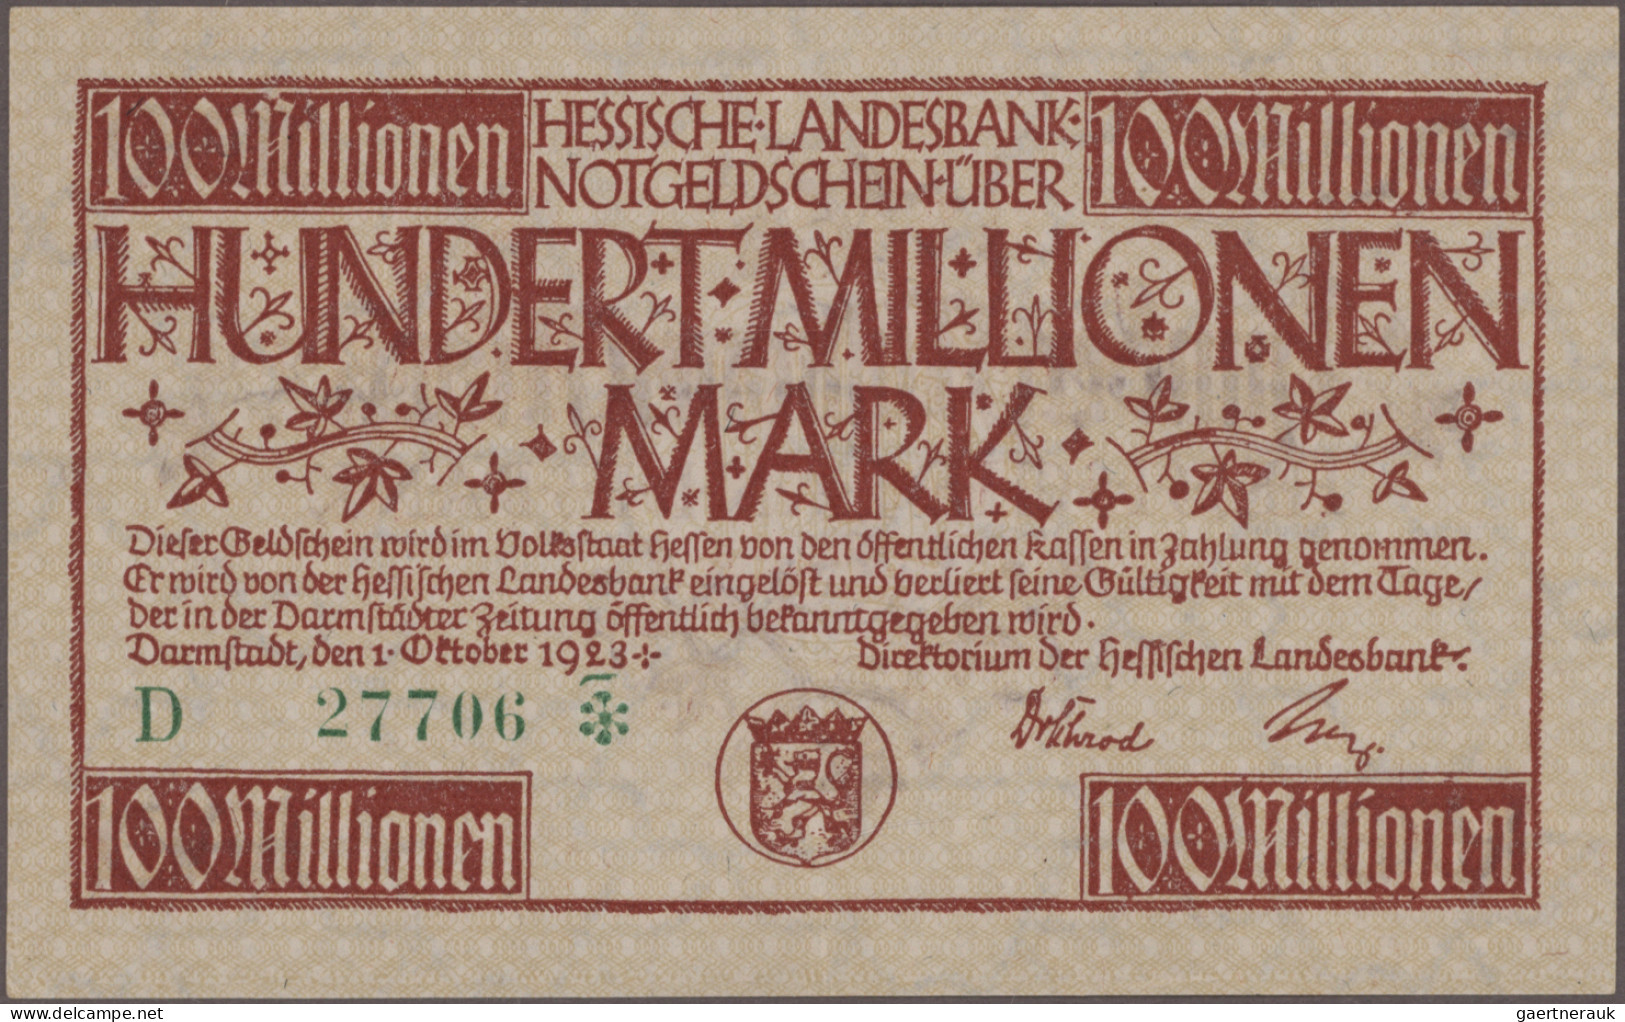 Deutschland - Länderscheine: Großes Konvolut mit 164 Länderbanknoten, Ausgaben 1